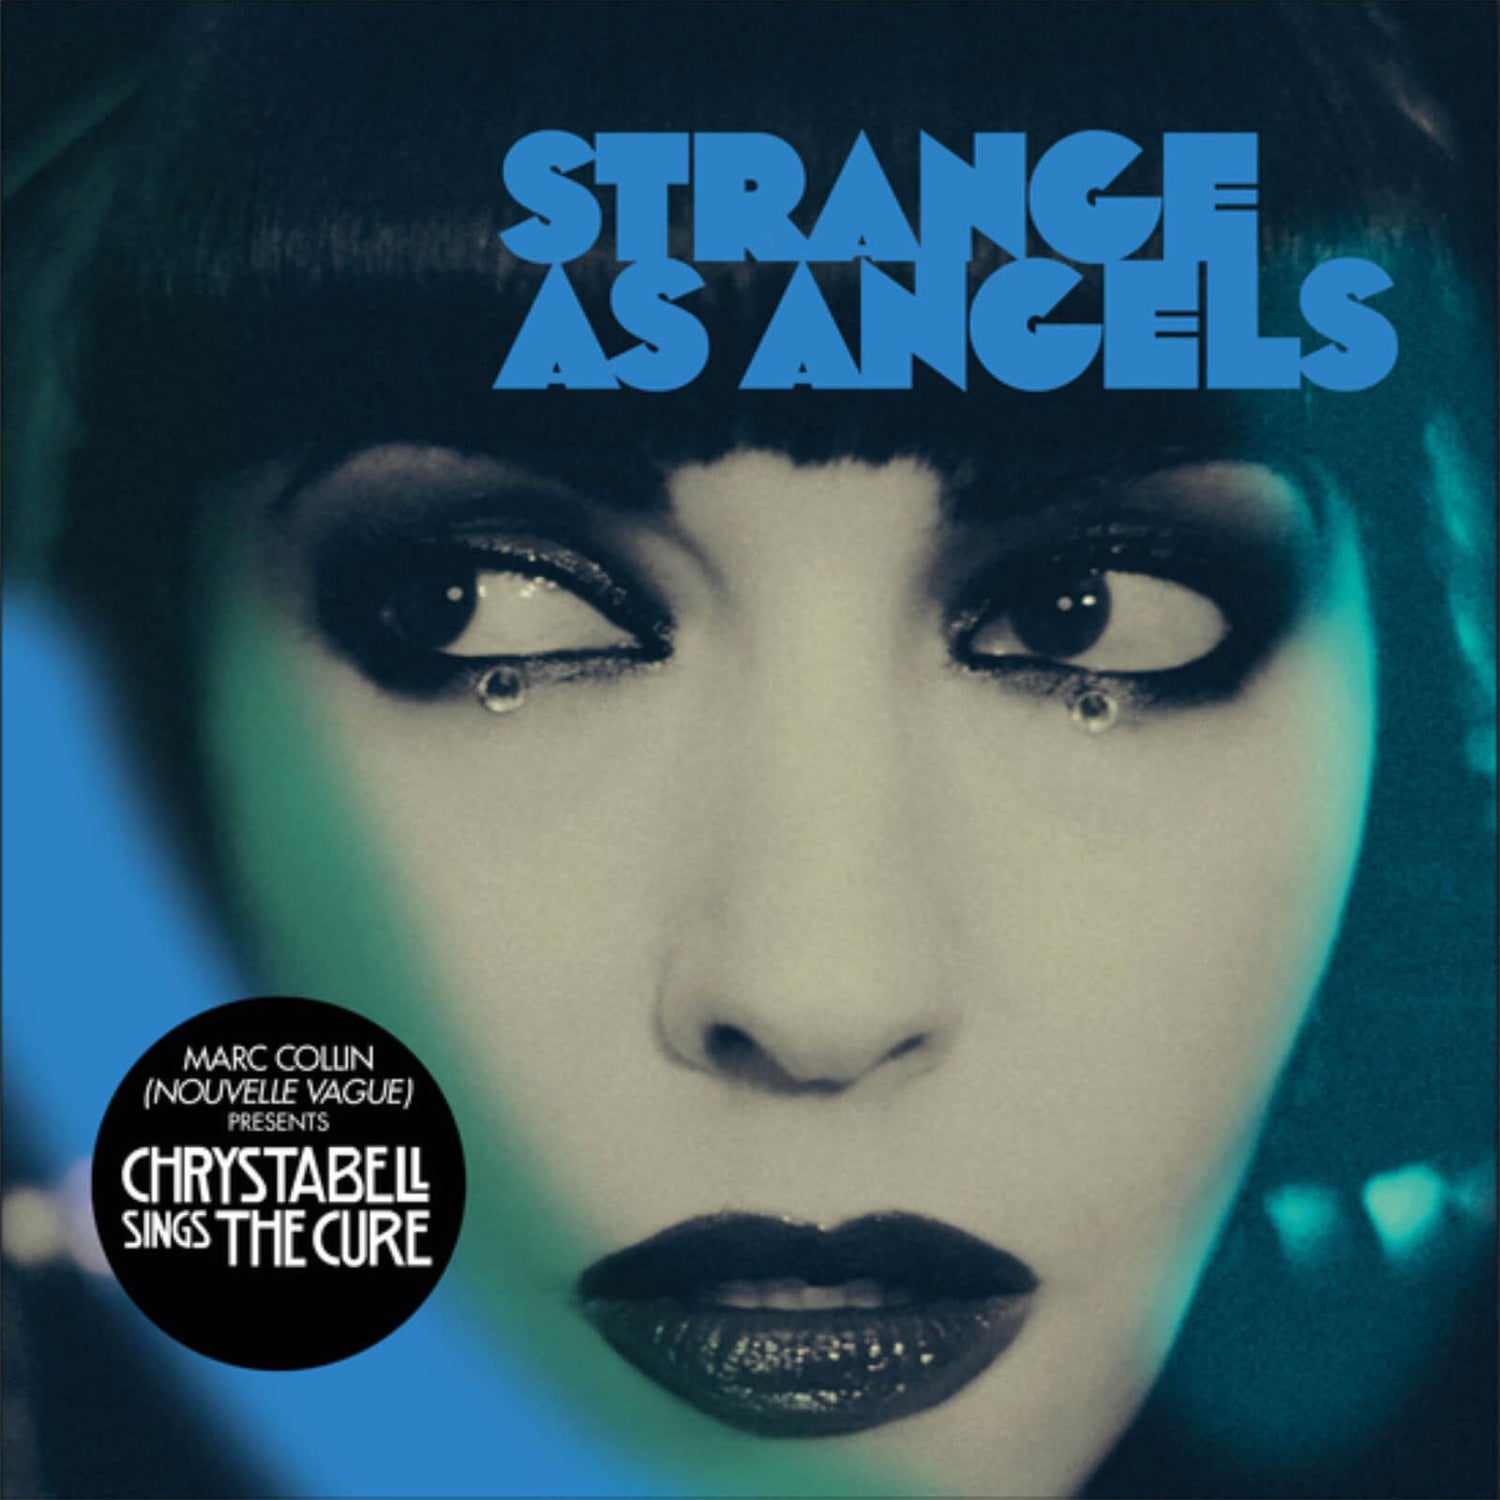 Strange As Angels - Chrystabell Sings the Cure Vinyl